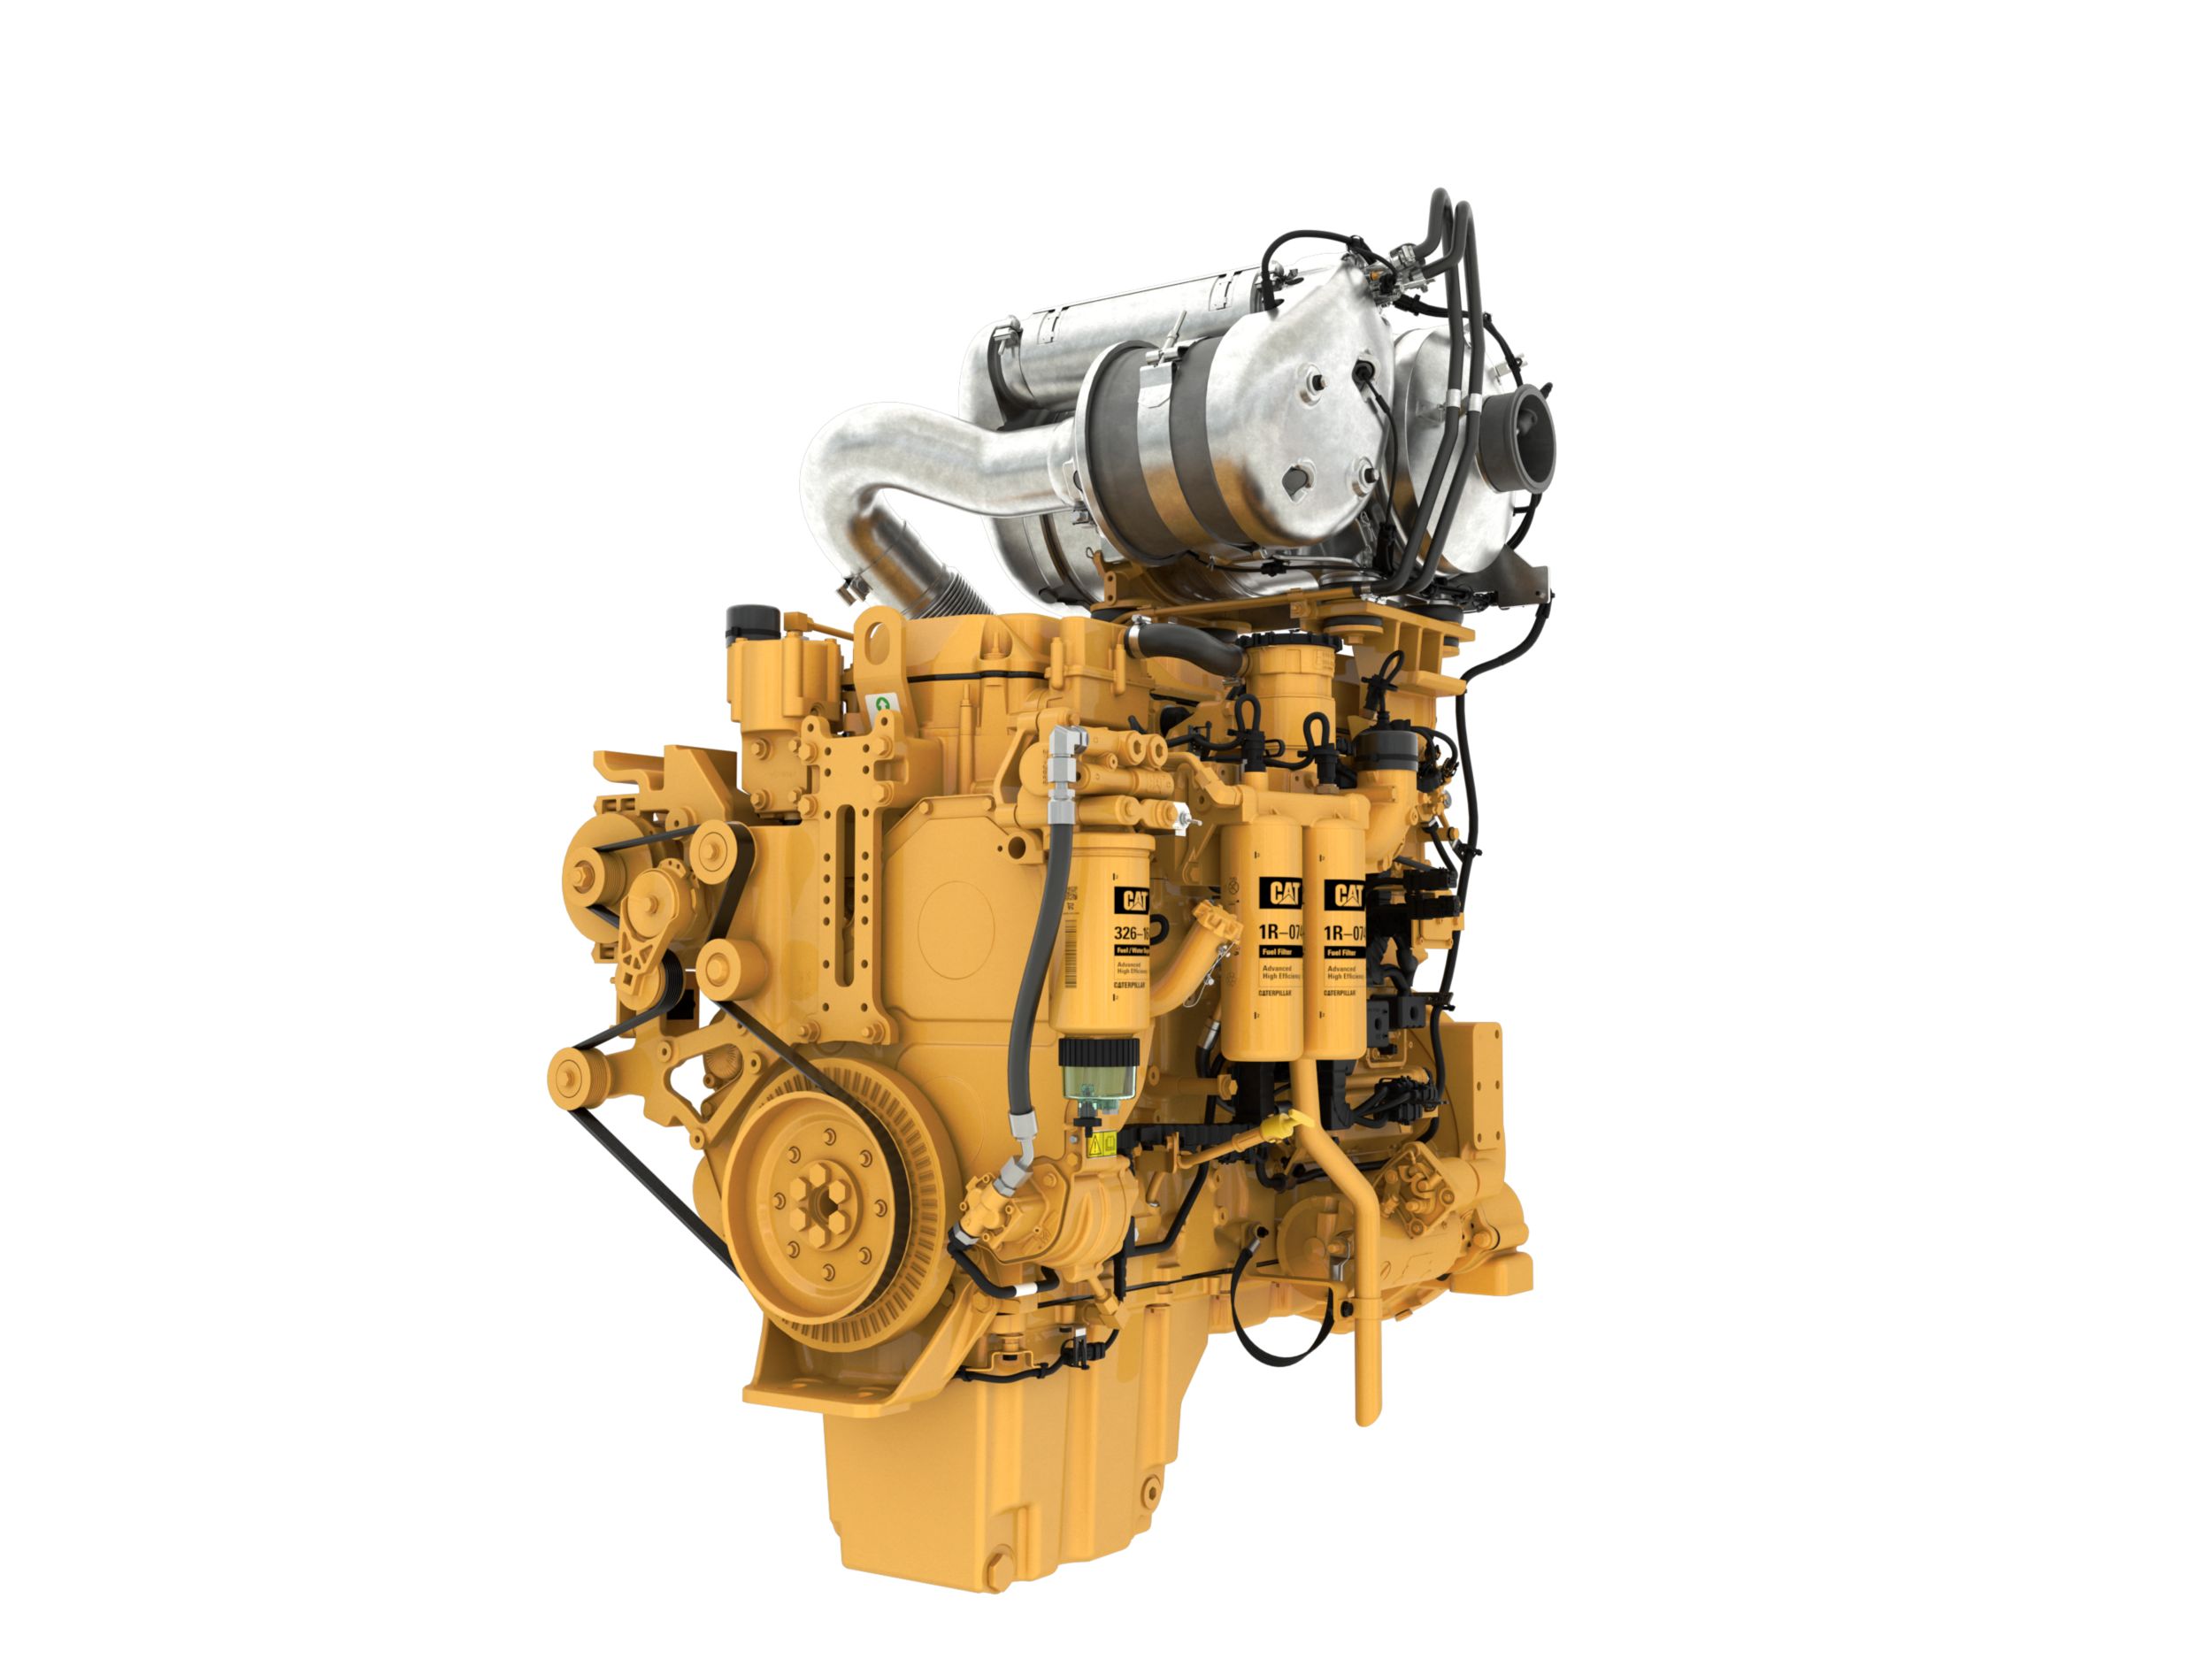 C13B Tier 4ディーゼルエンジン - 厳しい規制に対応